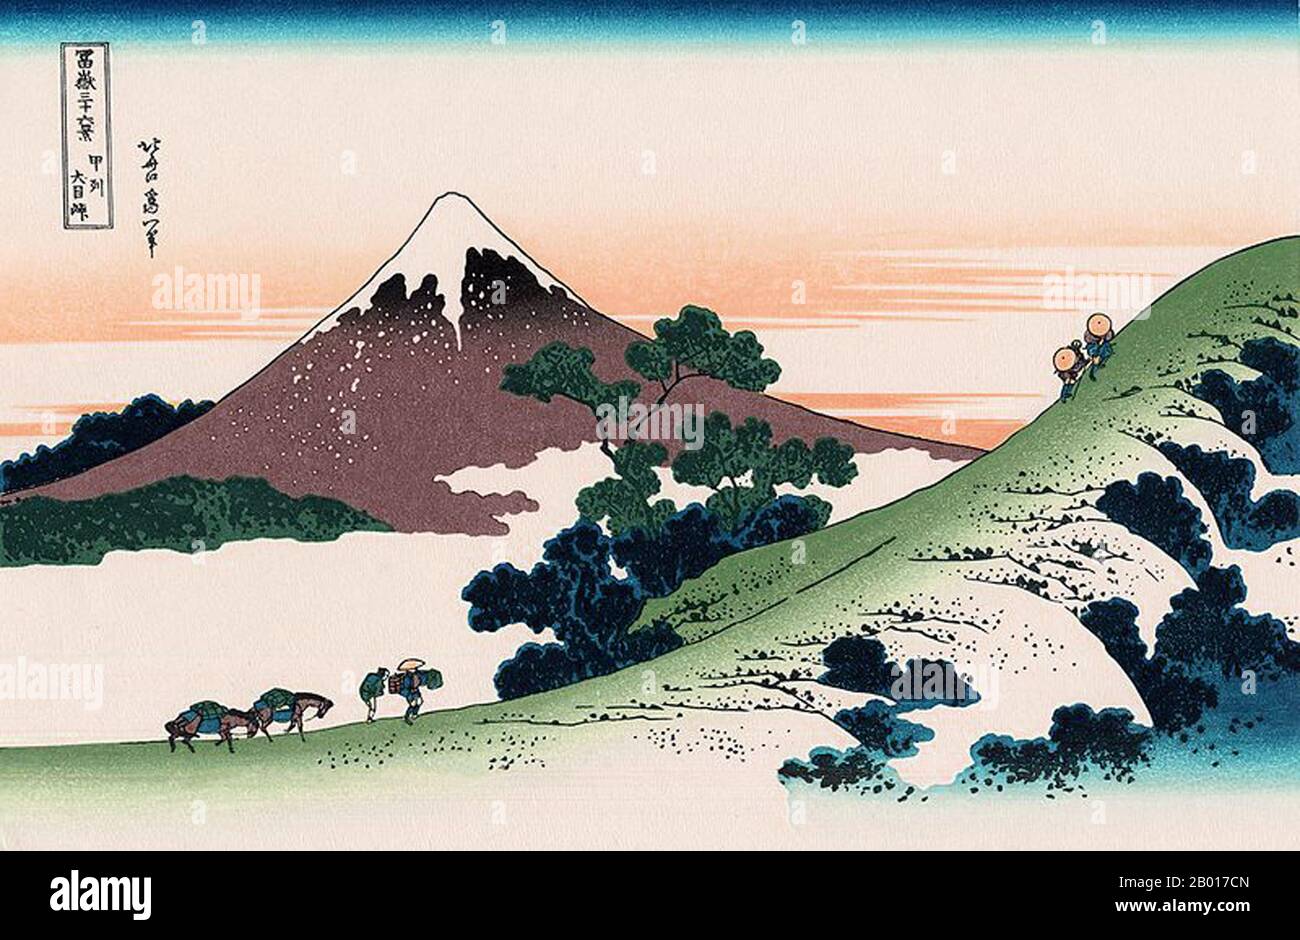 Giappone: «Inume Pass, Koshu». Ukiyo-e stampa in blocco della serie «trentasei viste del Monte Fuji» di Katsushika Hokusai (31 ottobre 1760 - 10 maggio 1849), 1830. “trentasei viste del Monte Fuji” è una serie di stampe in legno realizzate dall’artista giapponese Katsushika Hokusai. La serie raffigura il Monte Fuji in stagioni e condizioni meteorologiche diverse da una varietà di luoghi e distanze. Si compone di 46 stampe create tra il 1826 e il 1833. I primi 36 sono stati inclusi nella pubblicazione originale e, a causa della loro popolarità, altri 10 sono stati aggiunti dopo la pubblicazione originale. Foto Stock